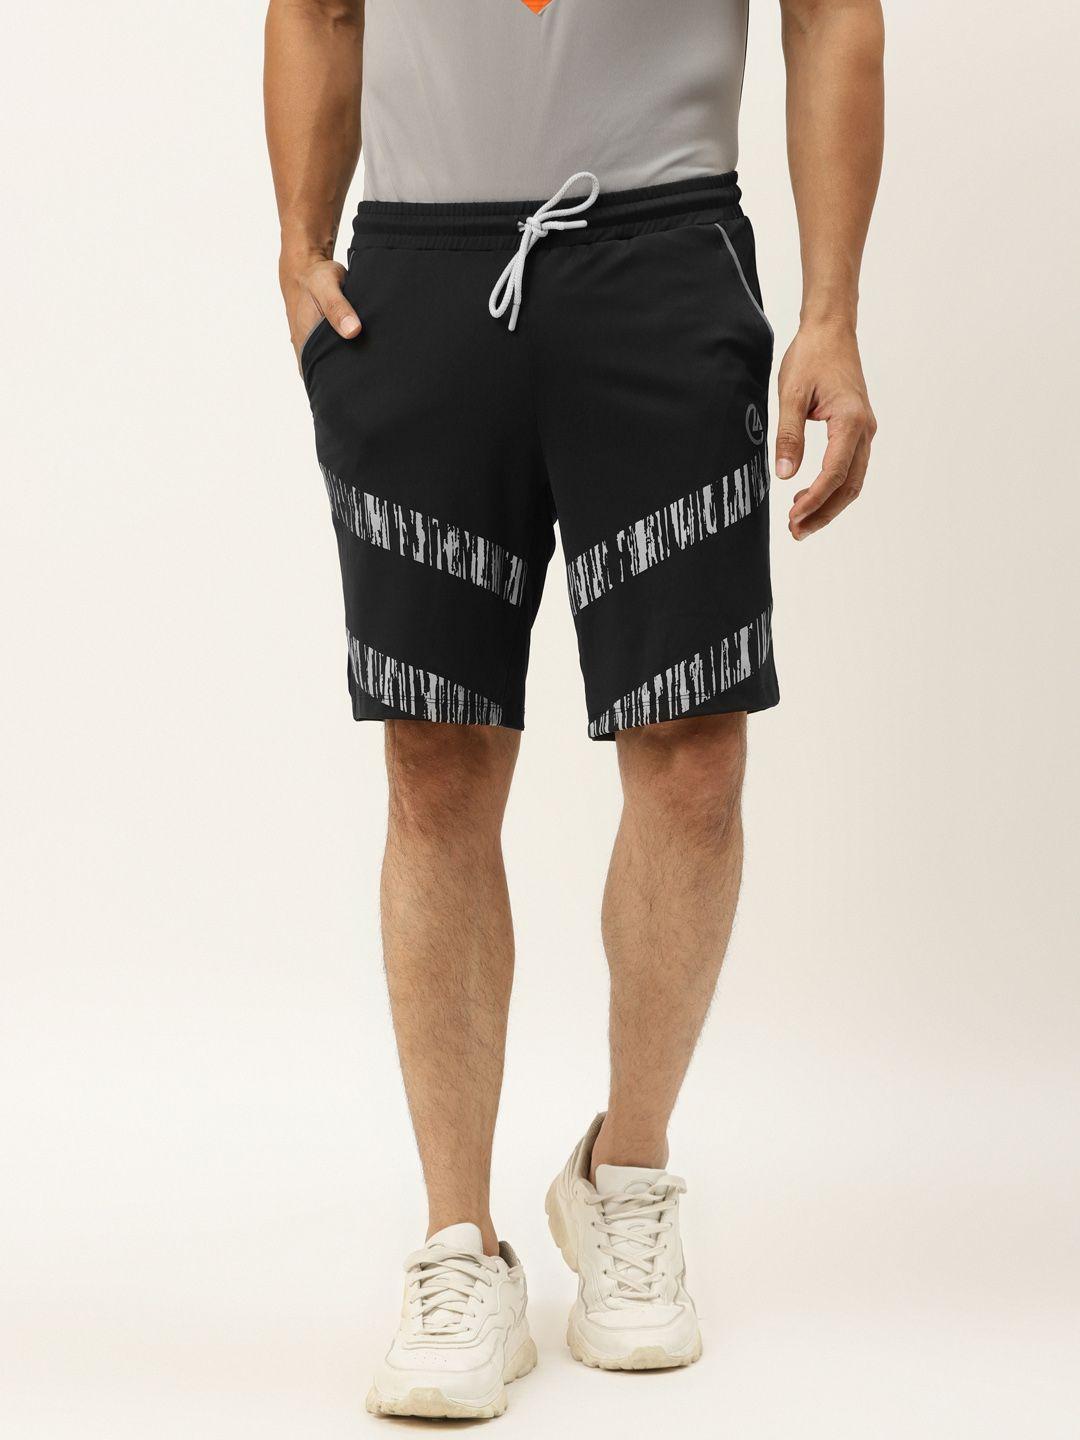 actoholic men black & grey printed regular fit sports shorts